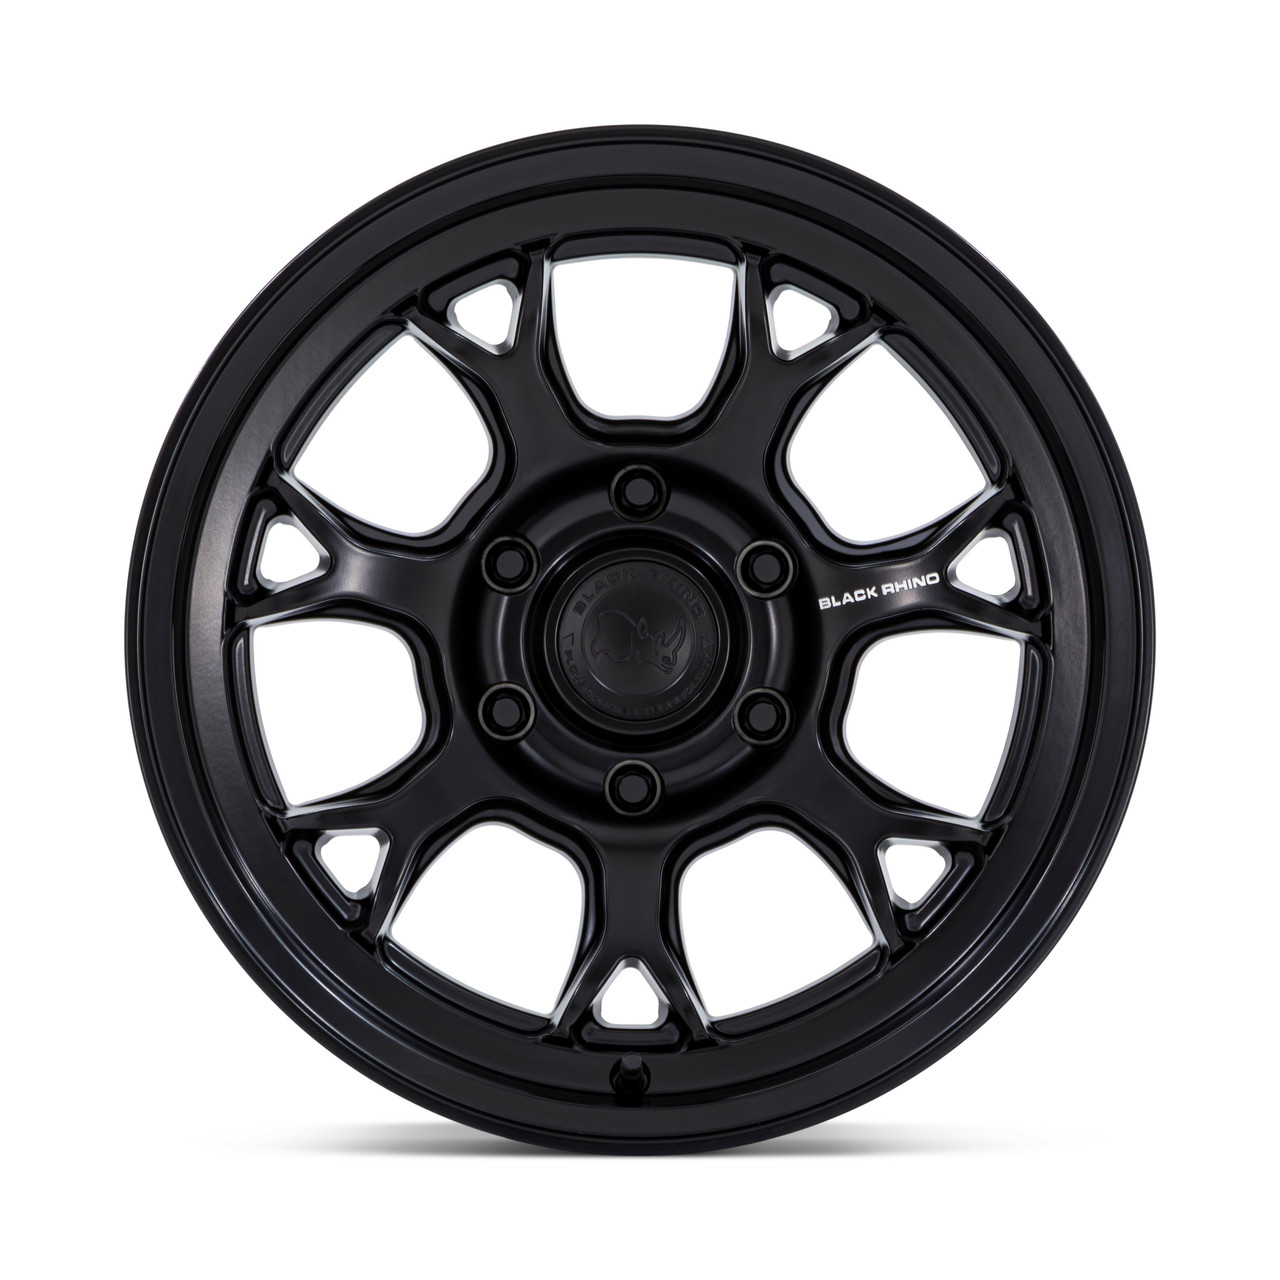 17" Black Rhino BR17 Etosha Matte Black 17x8.5 6x5.5 -10mm Lifted Truck Wheel